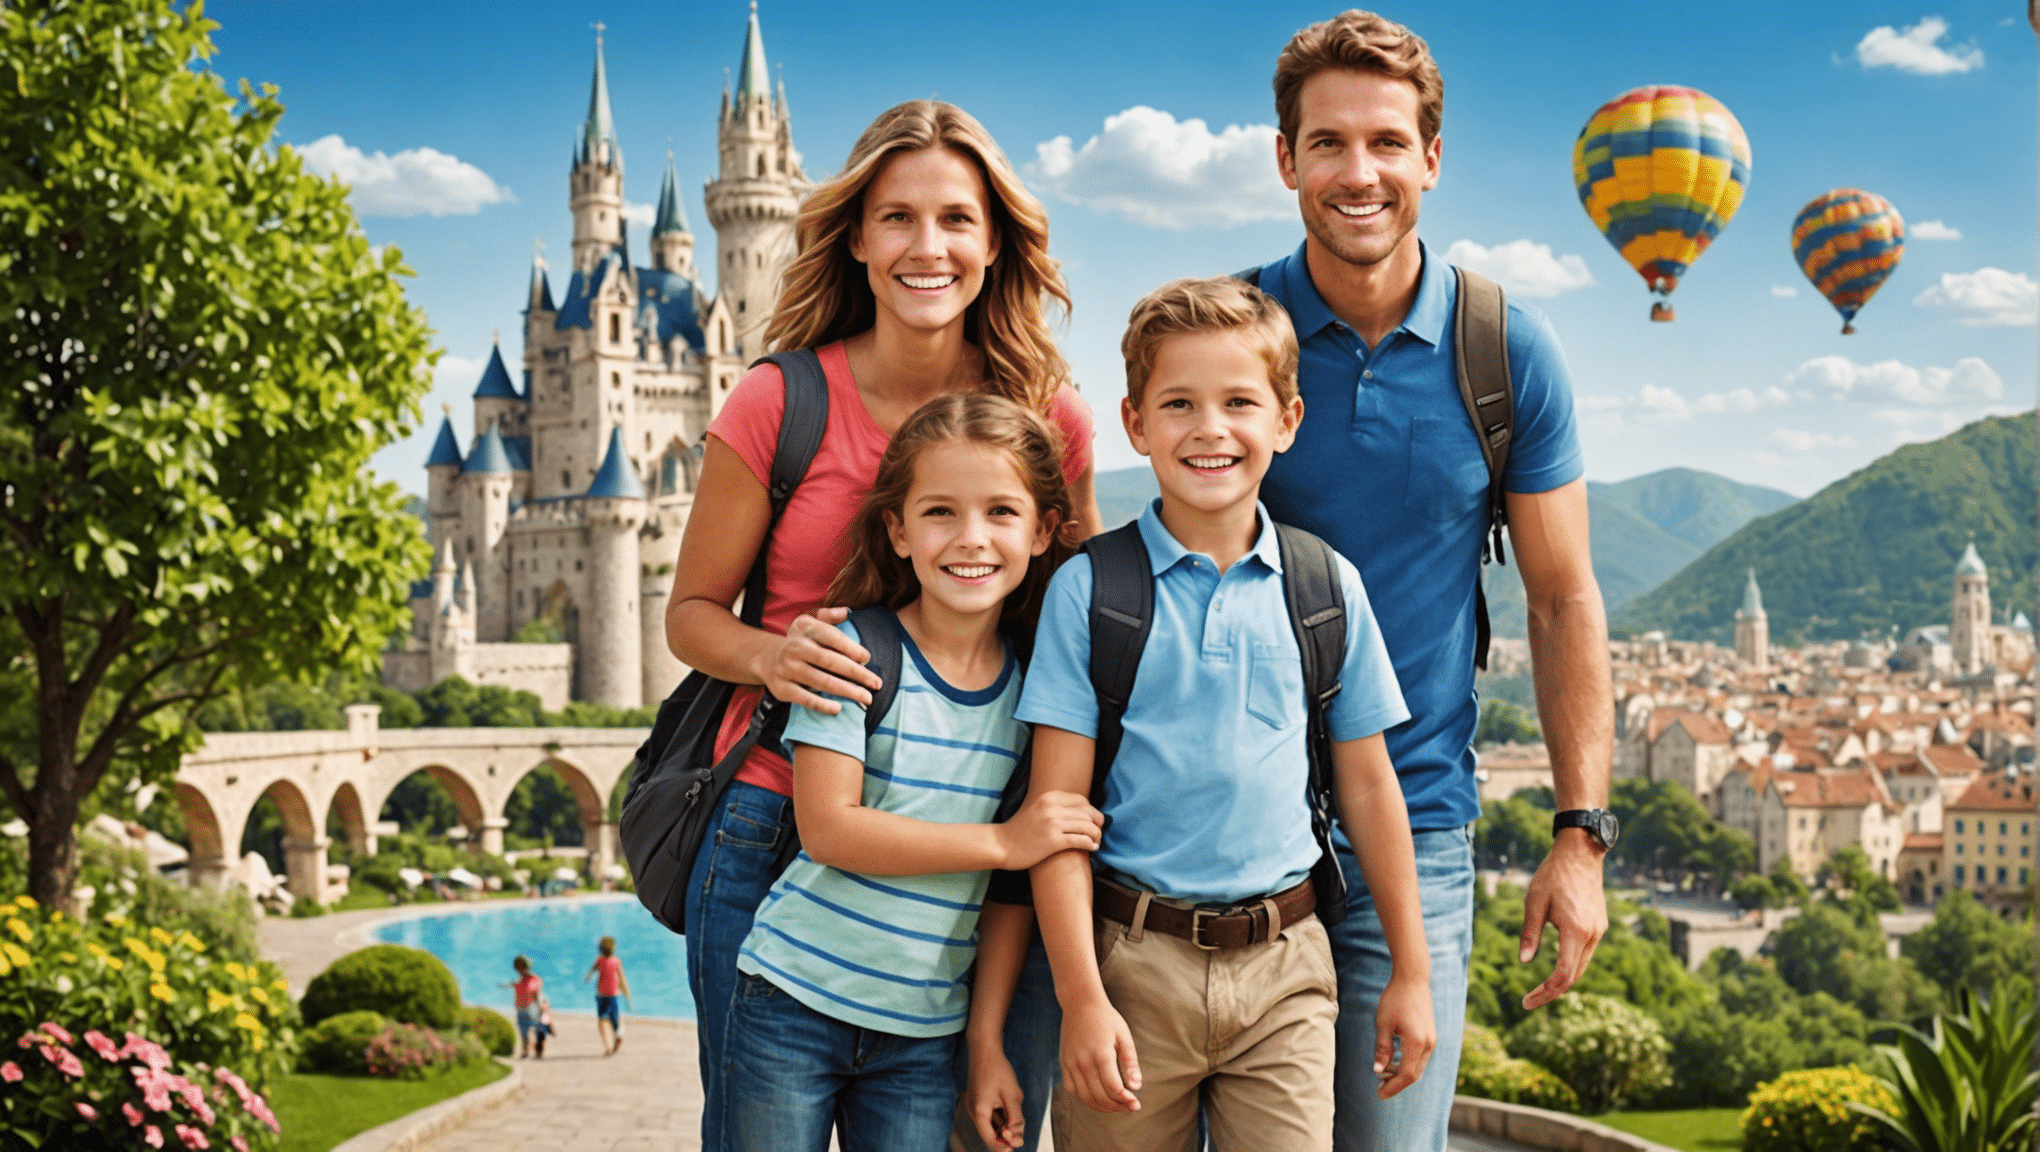 Entdecken Sie die idealen Reiseziele für einen Familienausflug mit Kindern und planen Sie unvergessliche Momente mit Ihrer Familie.